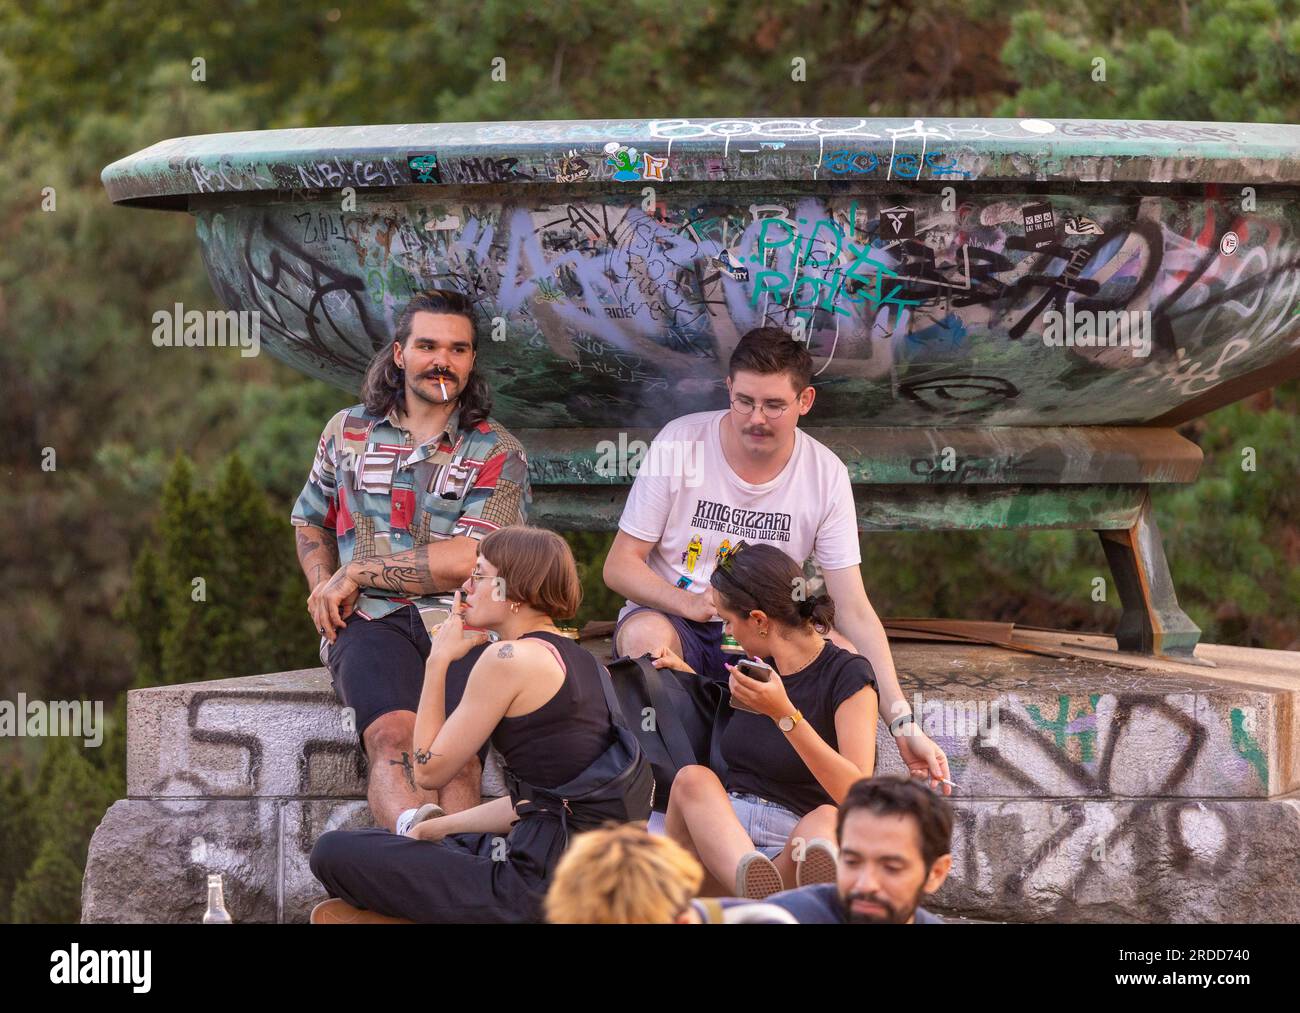 LETNA PARK, PRAGA, REPUBBLICA CECA, EUROPA - i giovani che si incontrano al Metronome nel Letna Park. Foto Stock